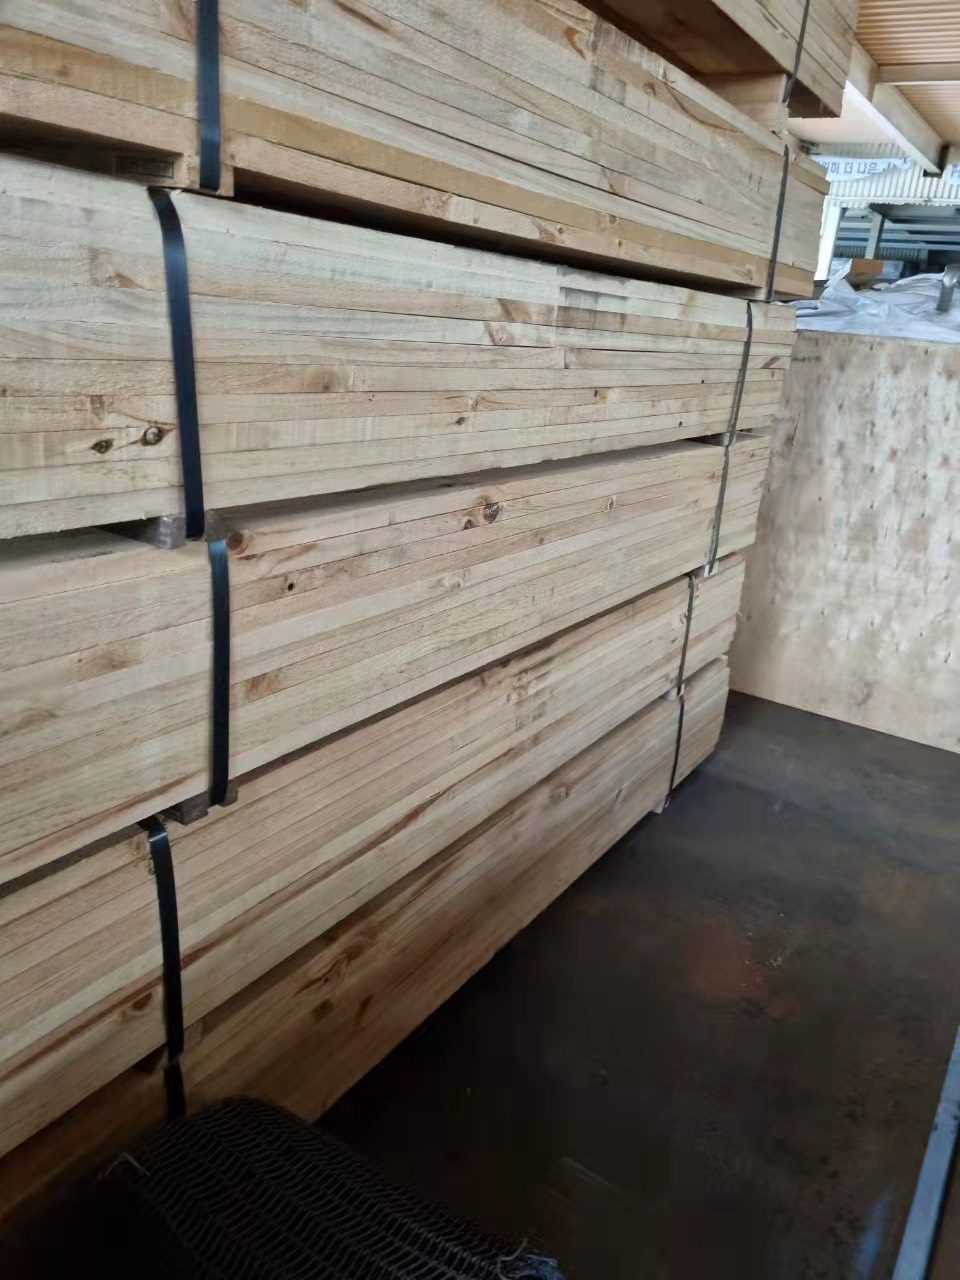 Đơn hàng xuất khẩu gỗ xẻ thanh sang thị trường Hàn Quốc GK01-121021